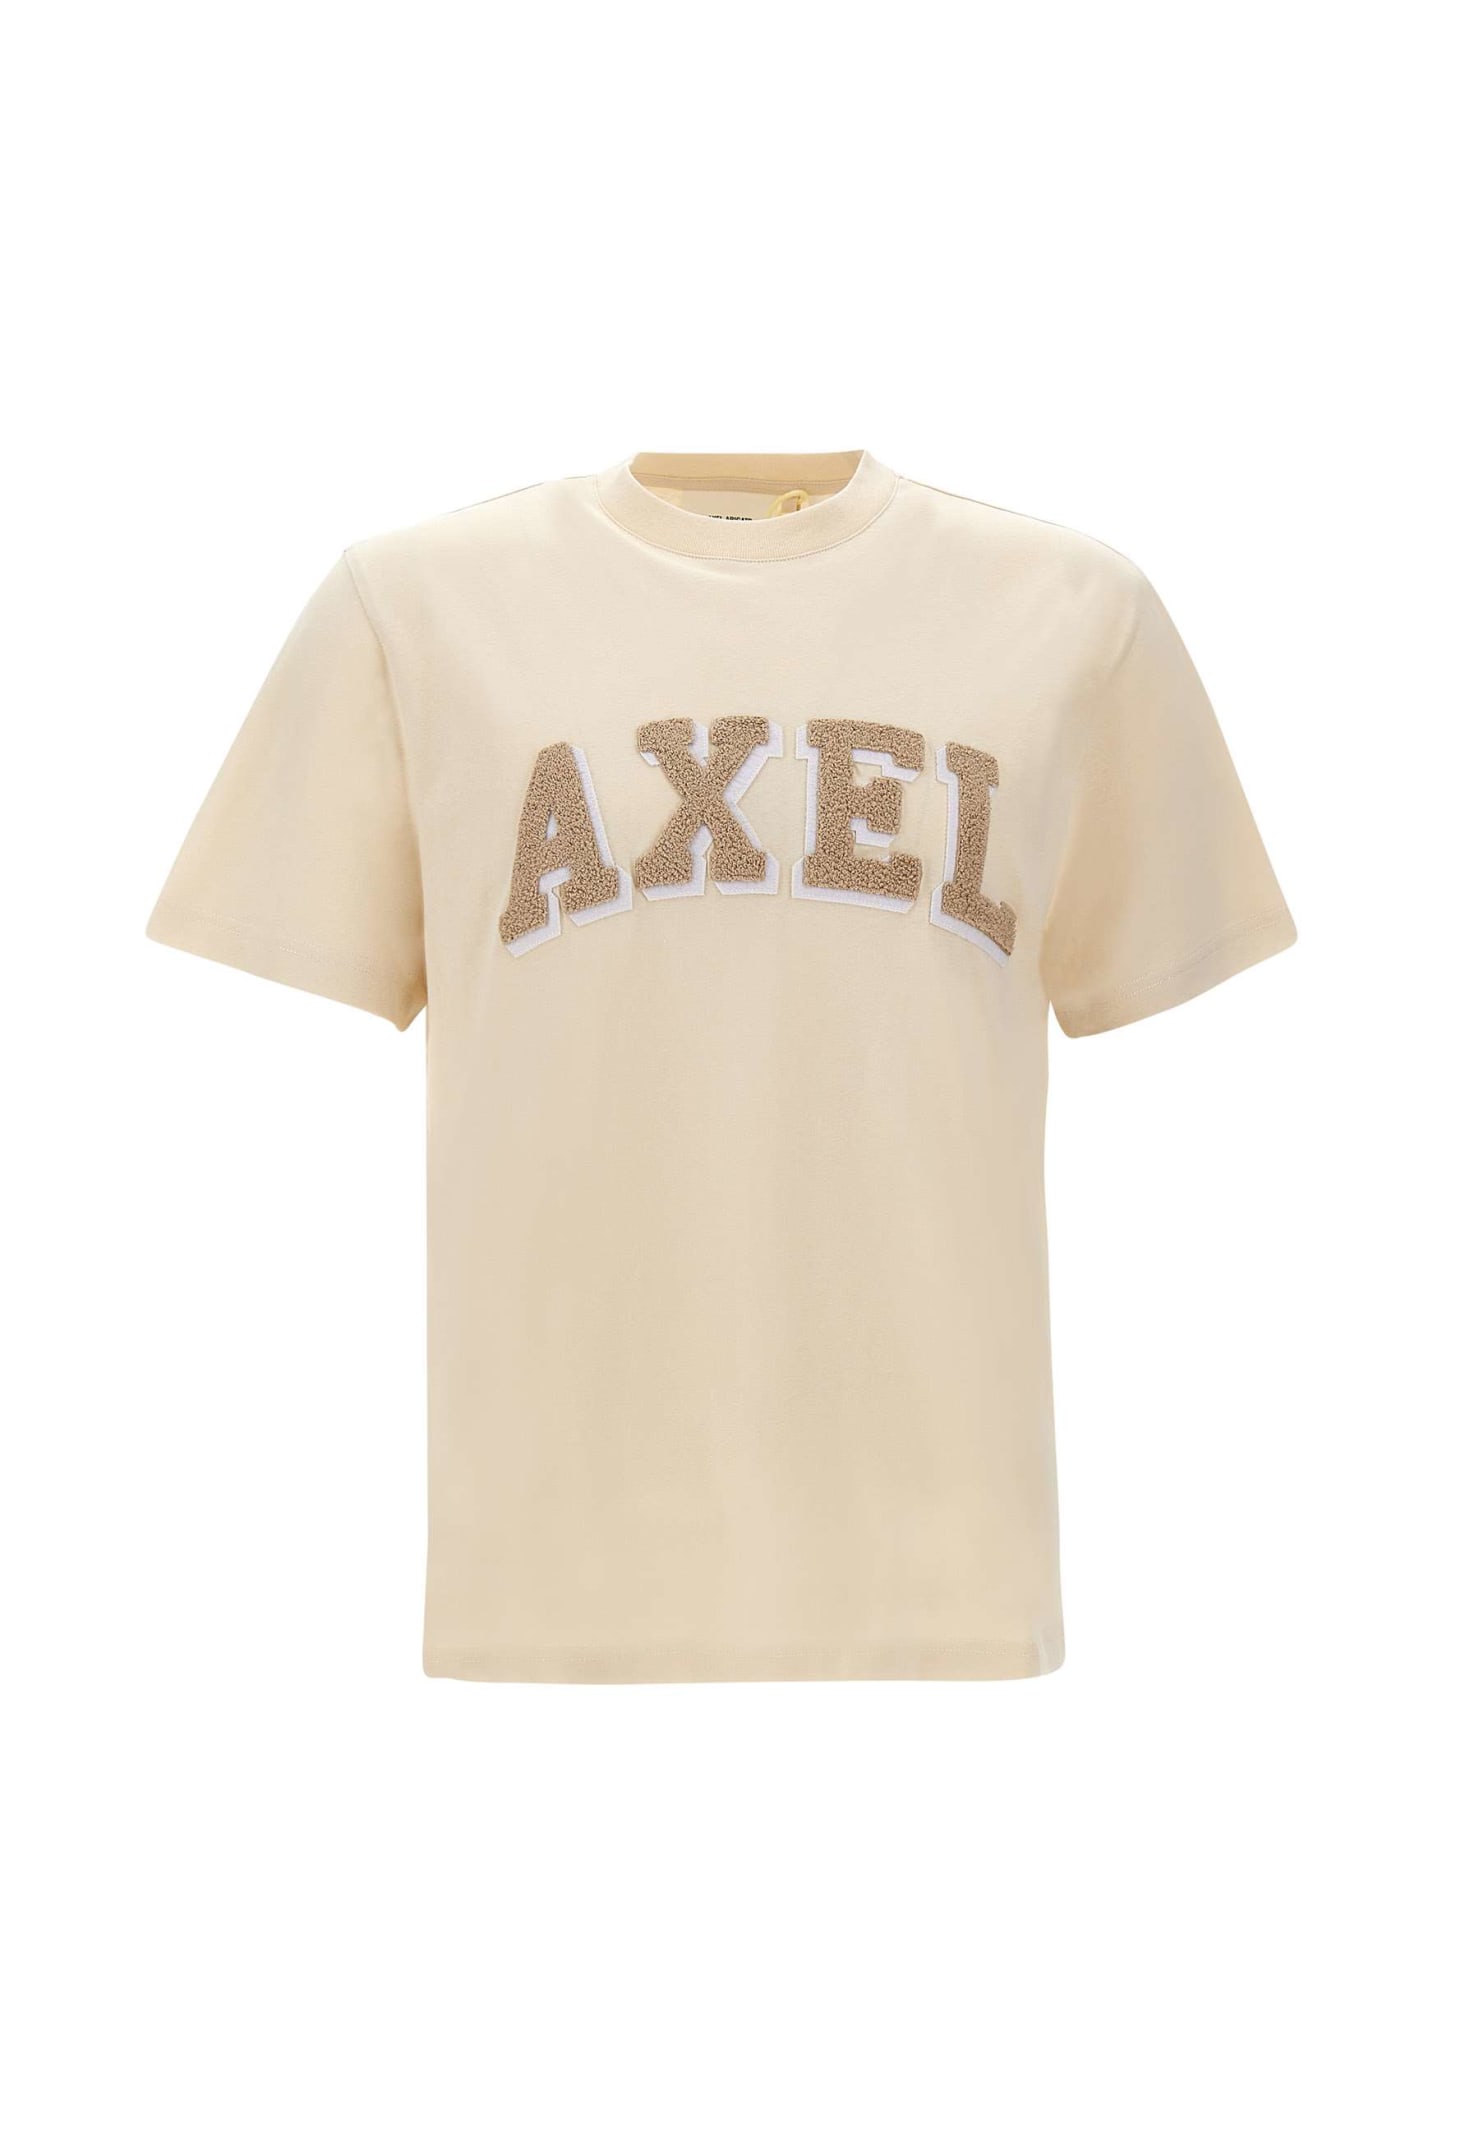 Axel Arigato Cotton T-shirt axel Arc